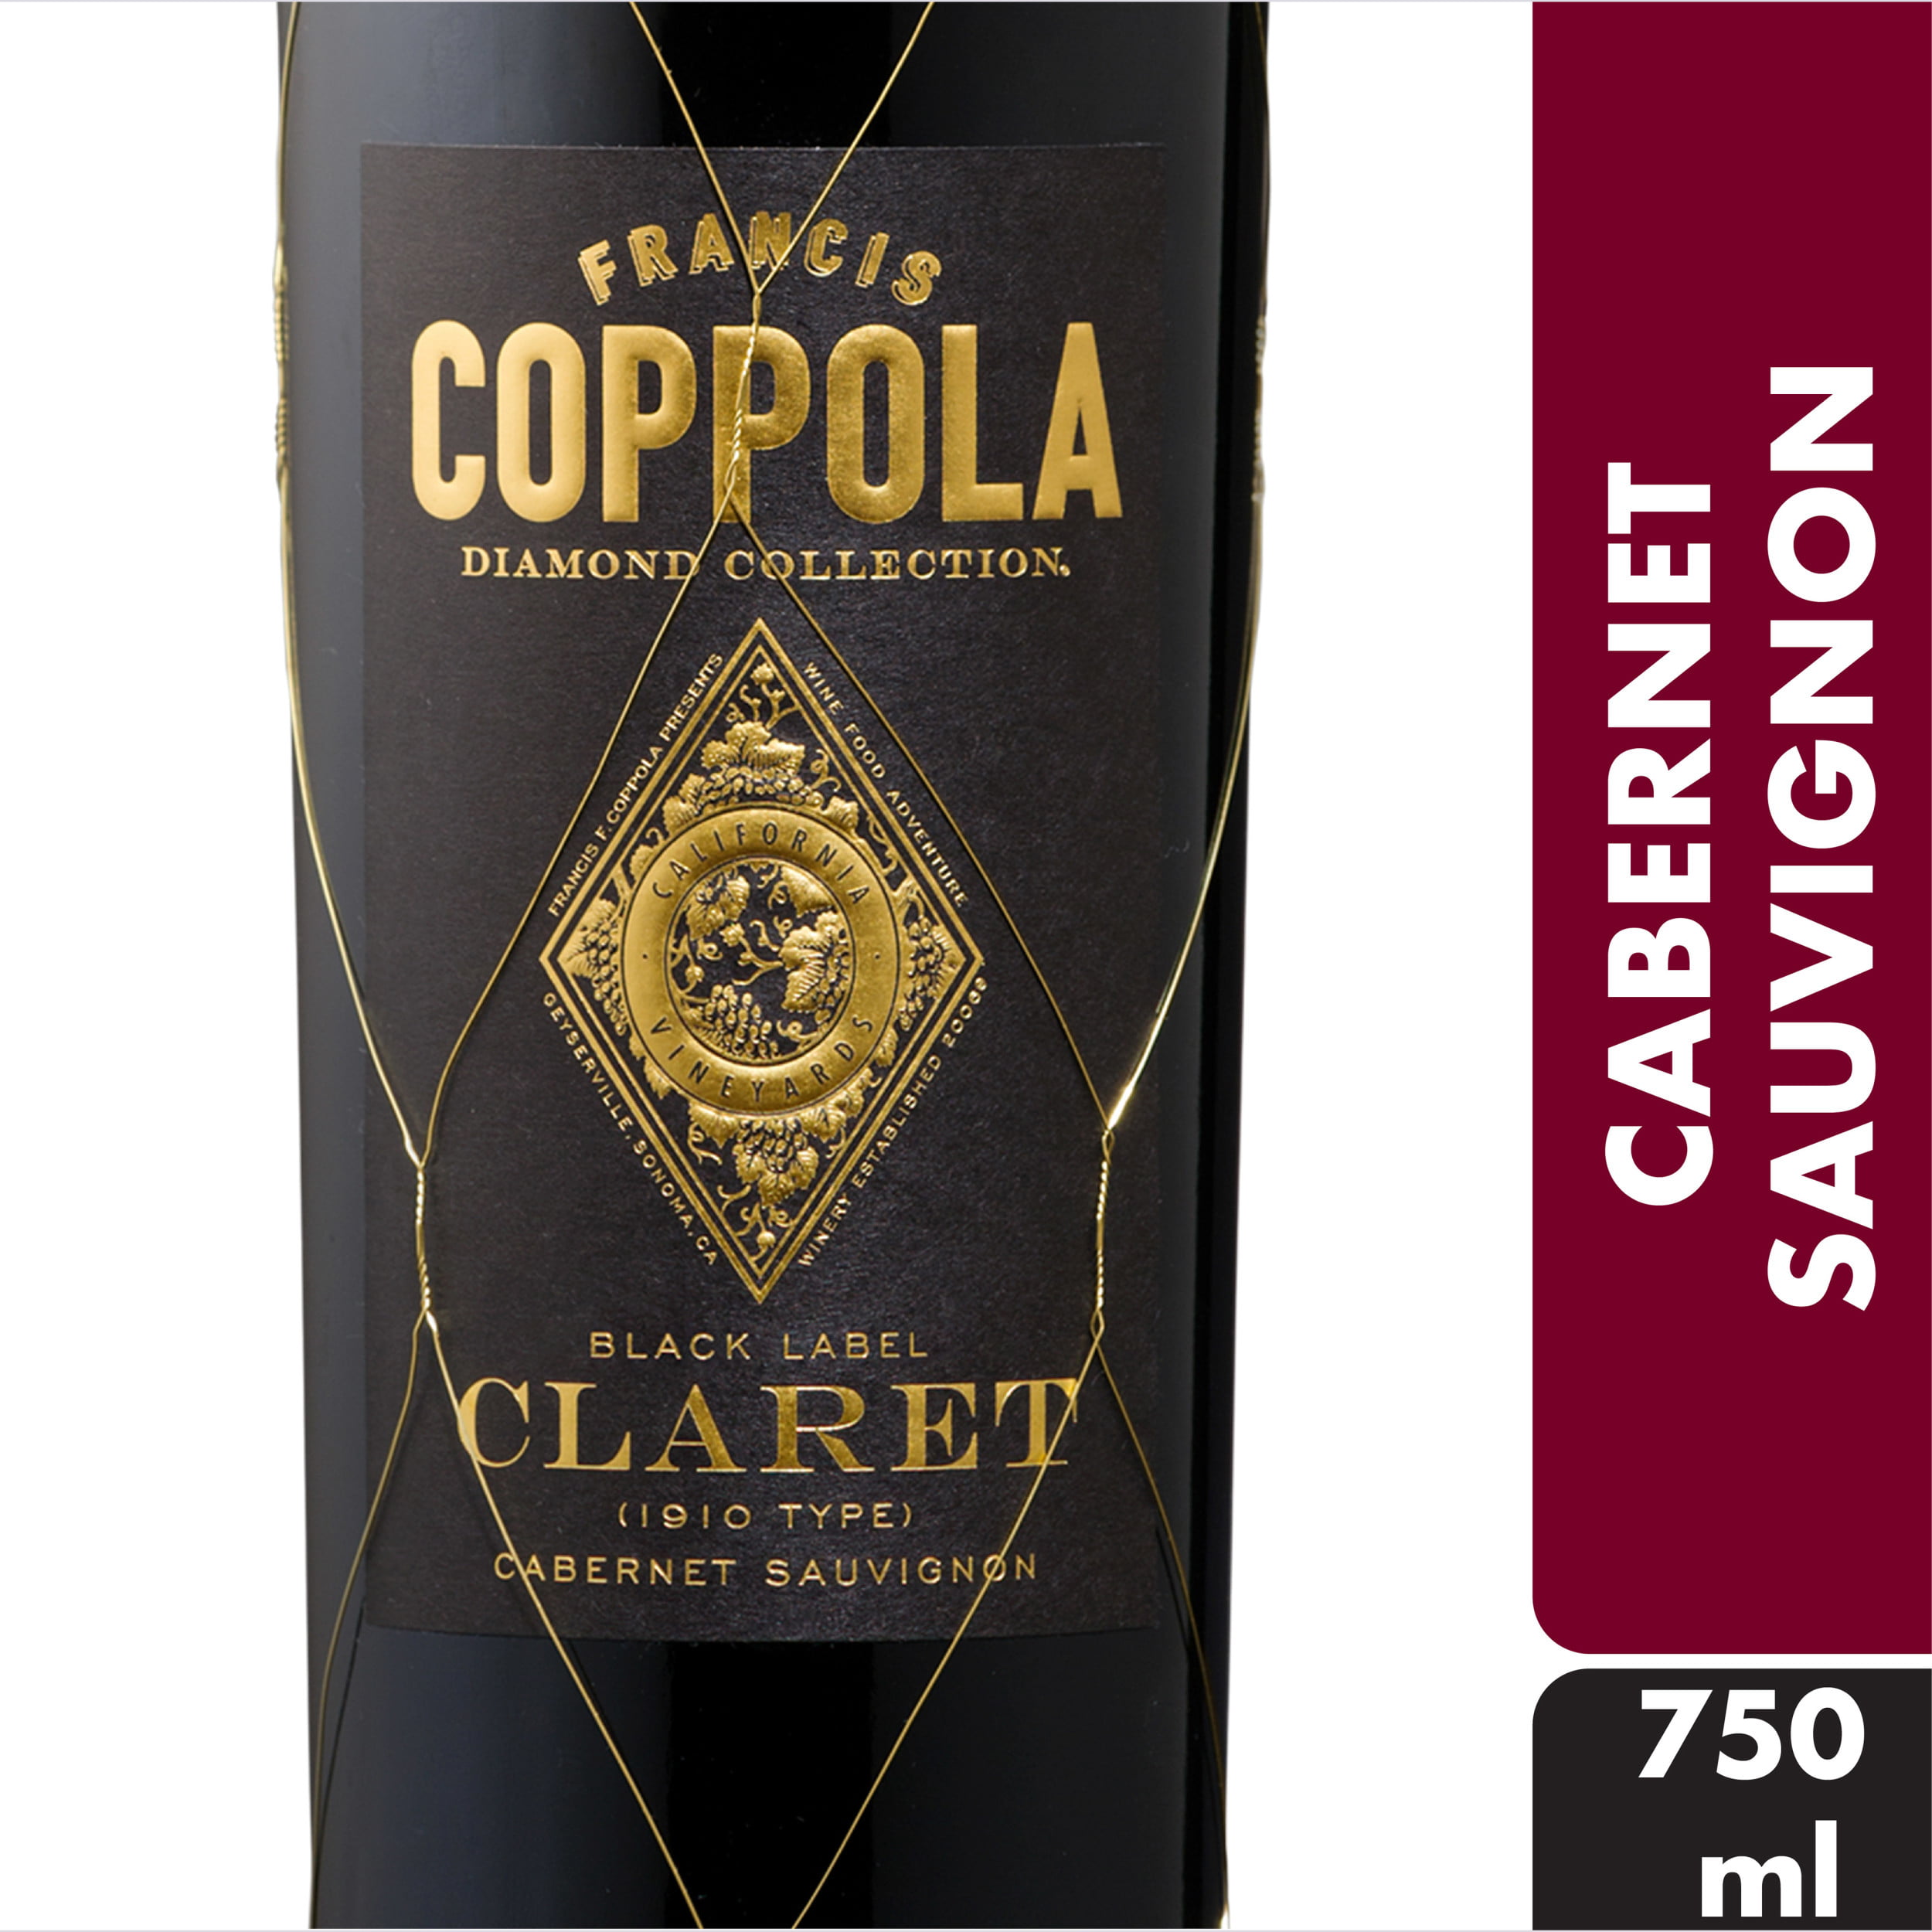 coppola wine claret